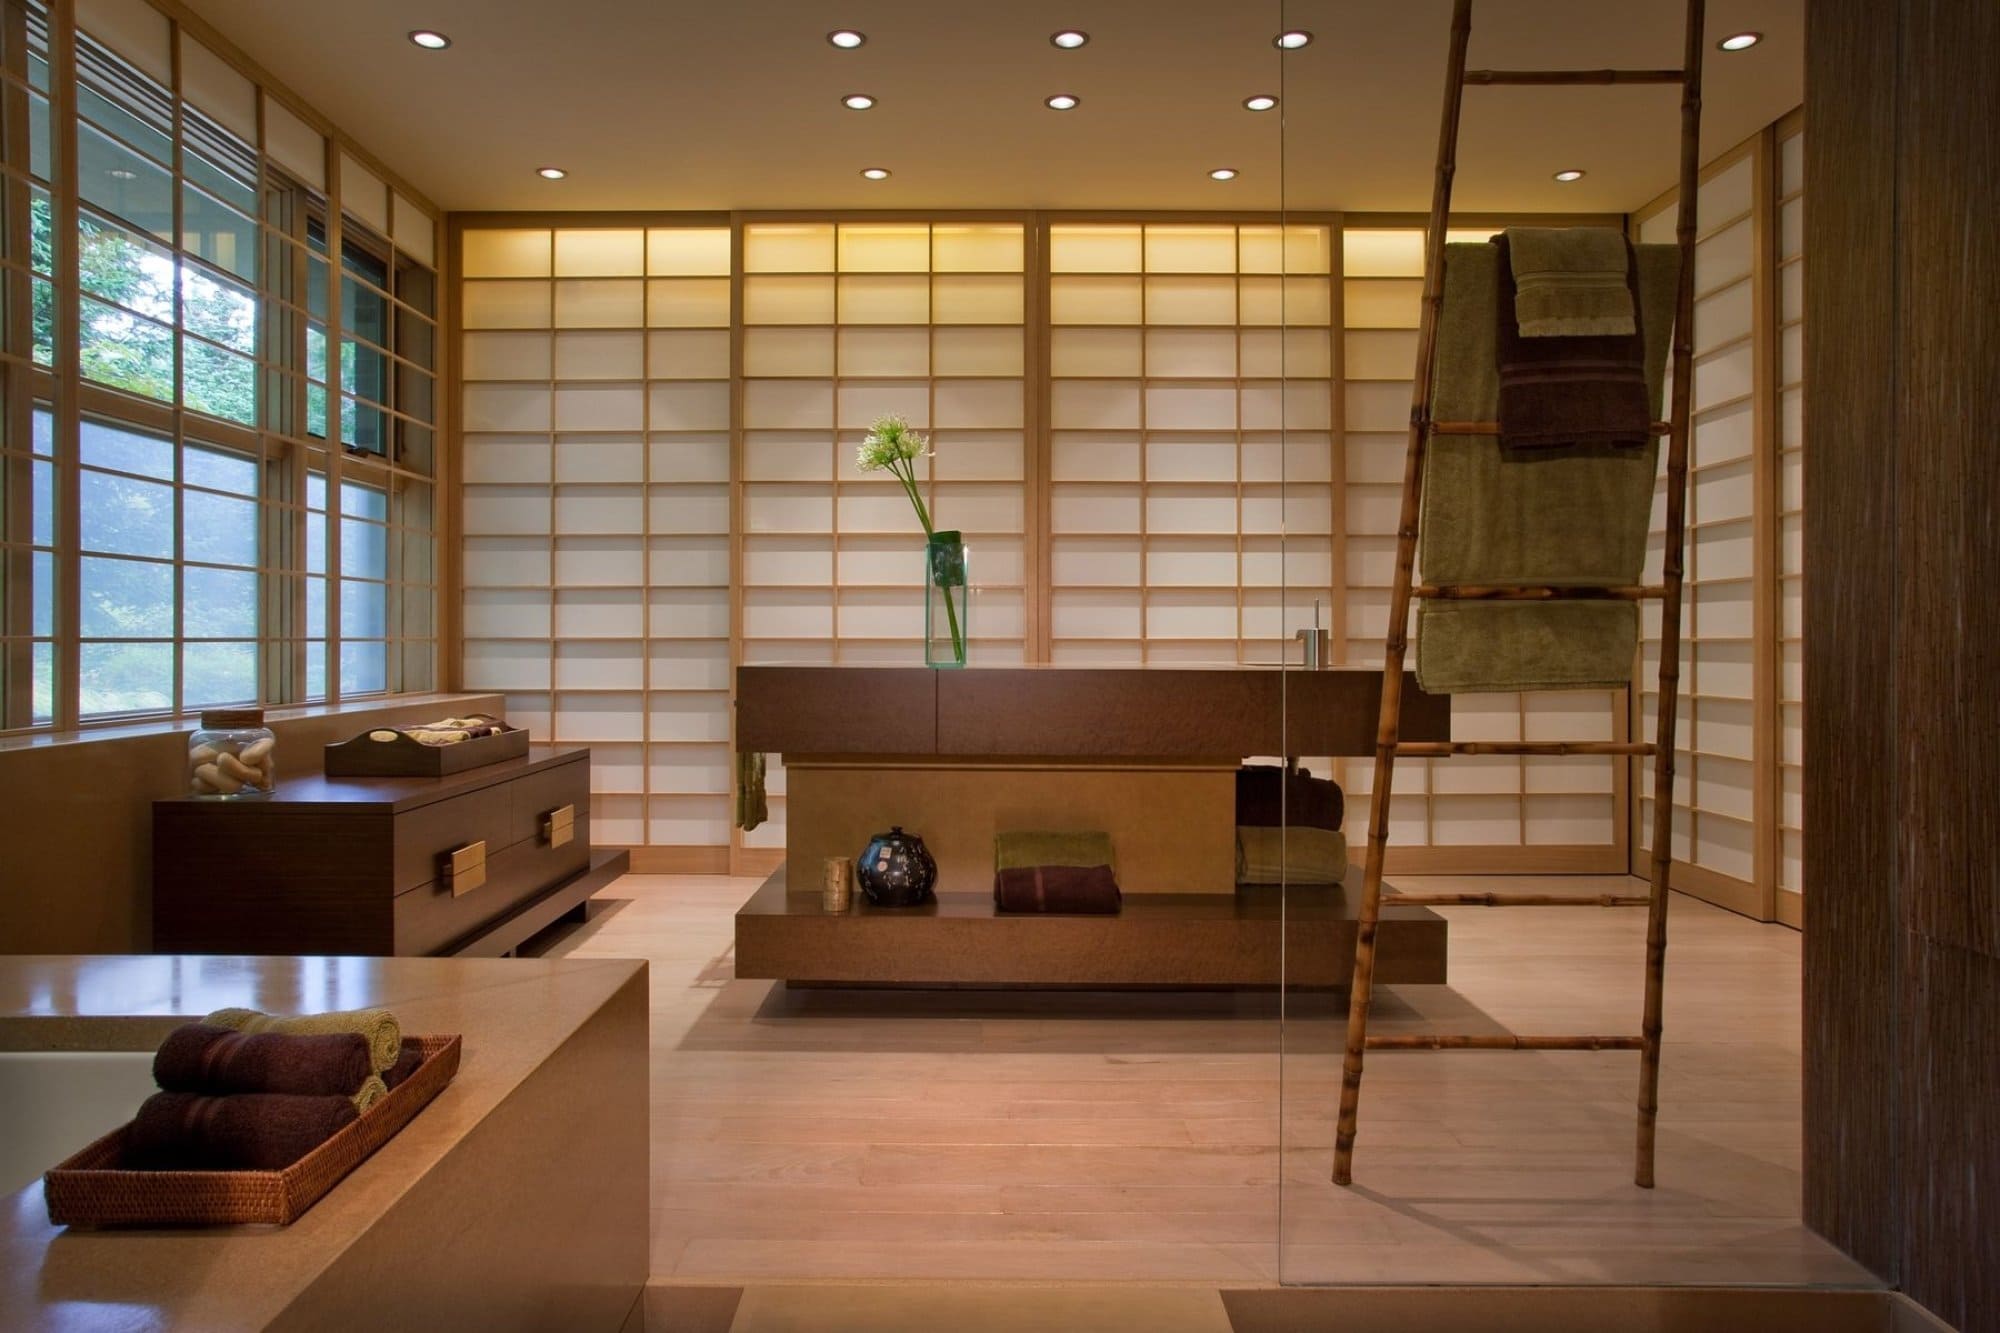 19 Stunning Bamboo Bathroom Ideas - 77